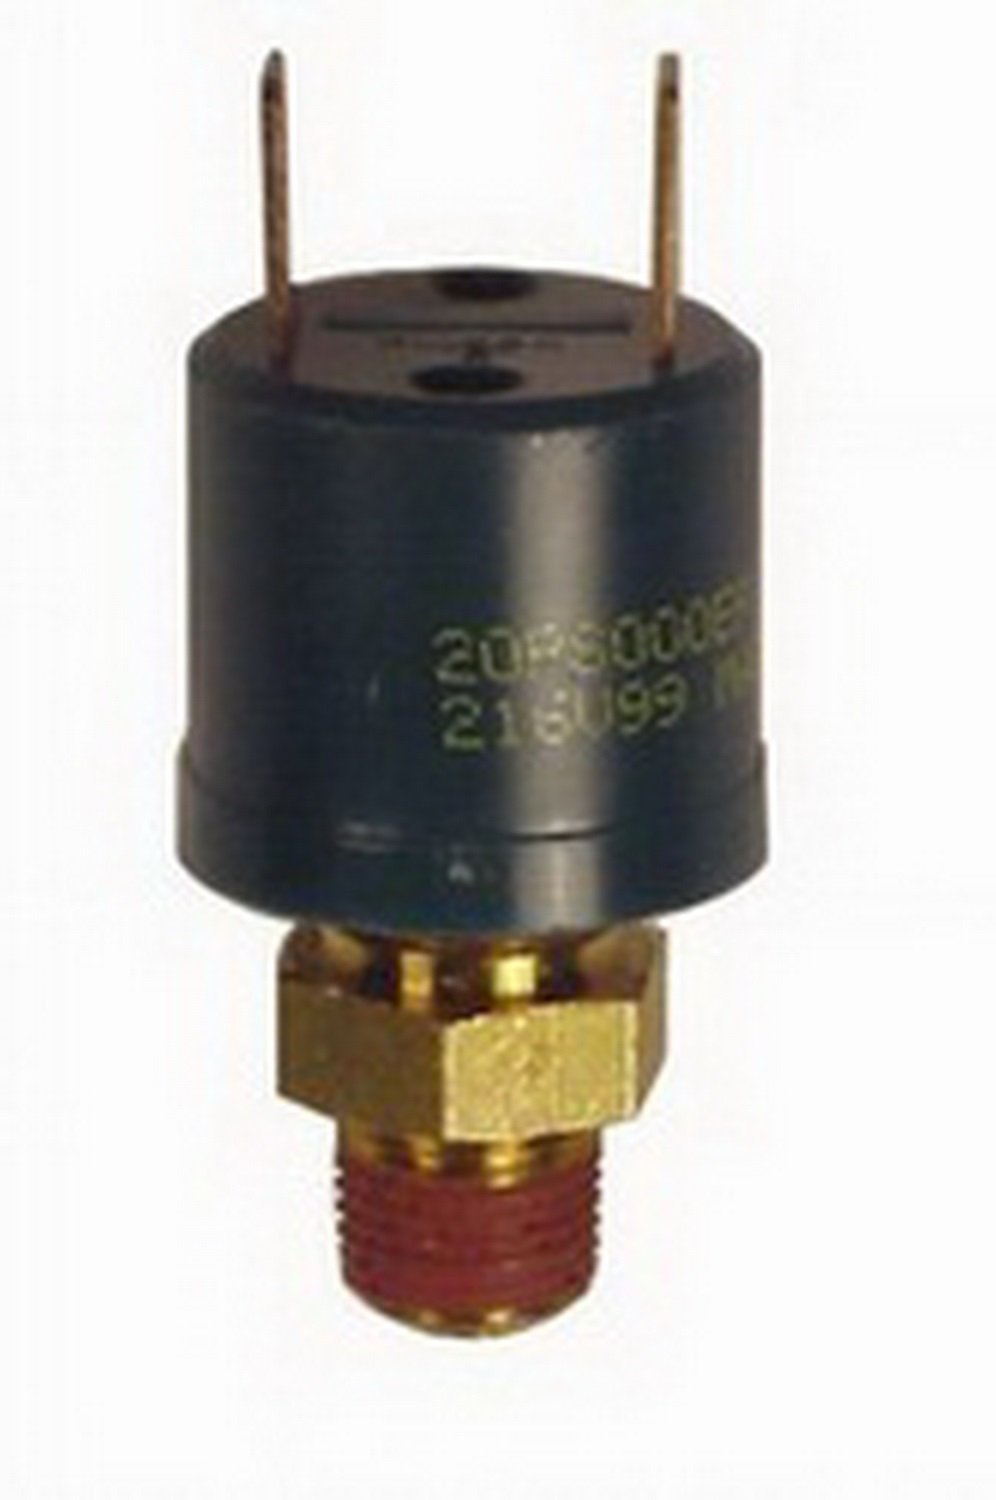 Firestone Fir9016 Pressure Switch 90-120 Psi